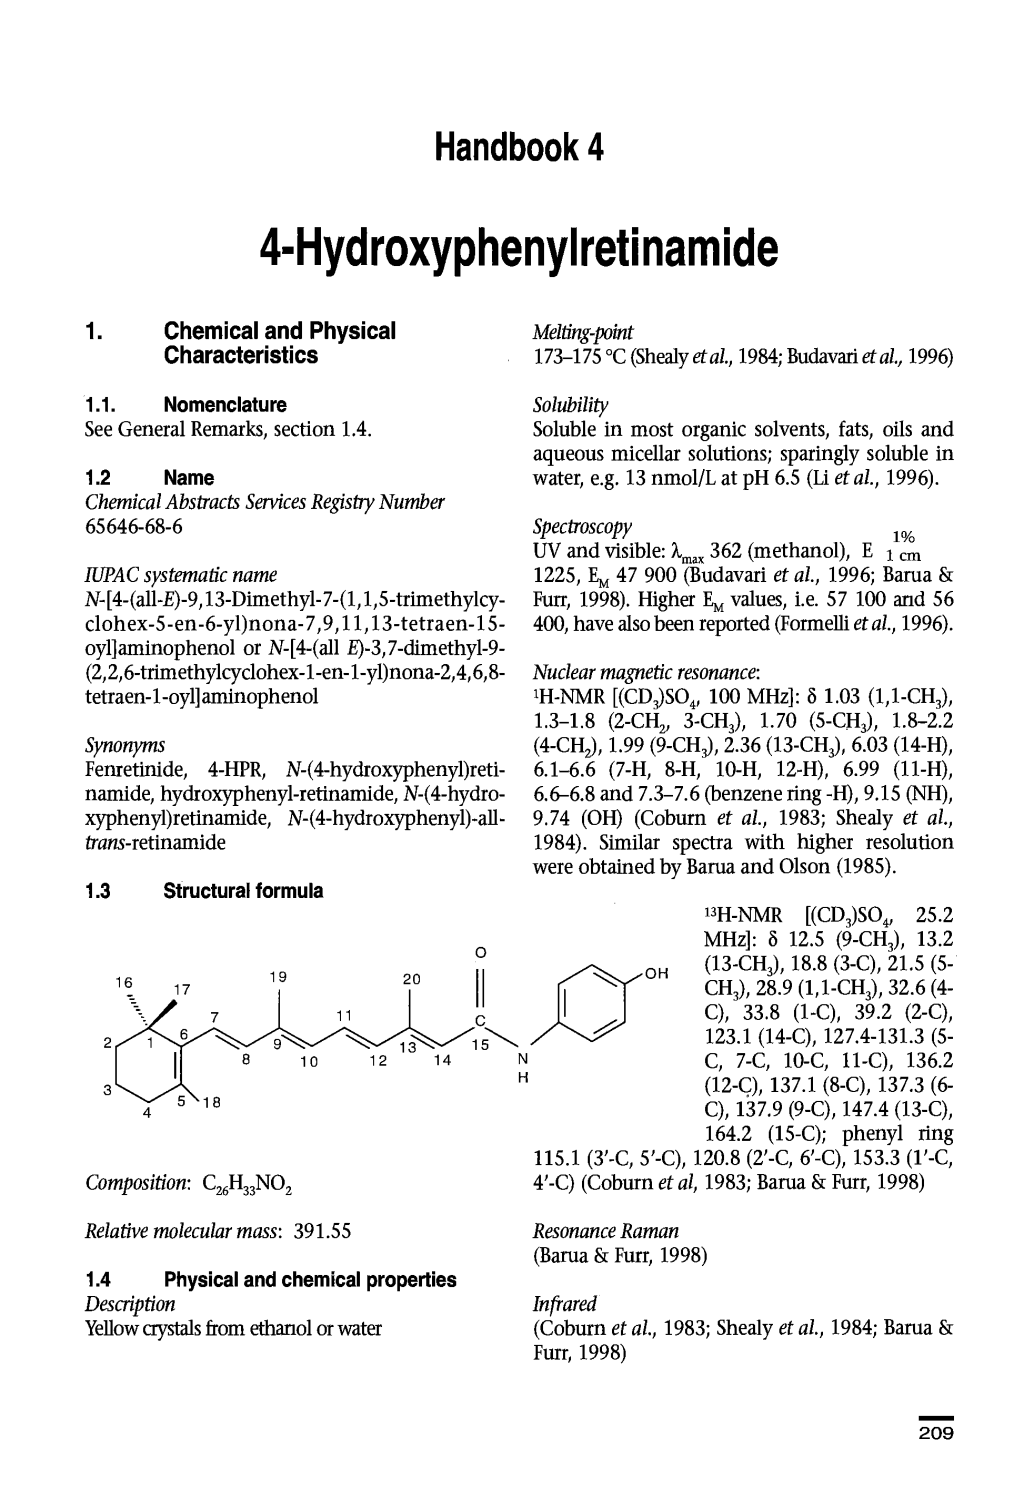 4-Hydroxyphenyiretinamide